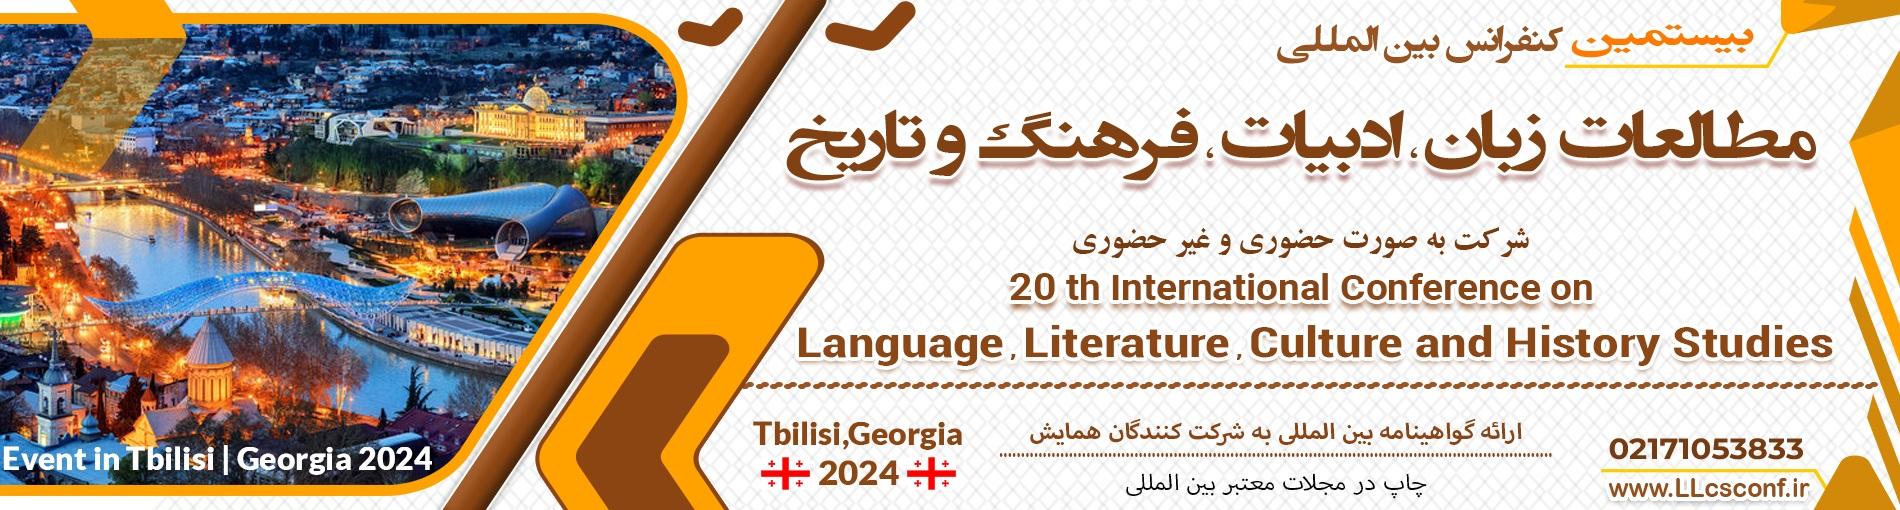 کنفرانس بین المللی مطالعات زبان،ادبیات ، فرهنگ و تاریخ	